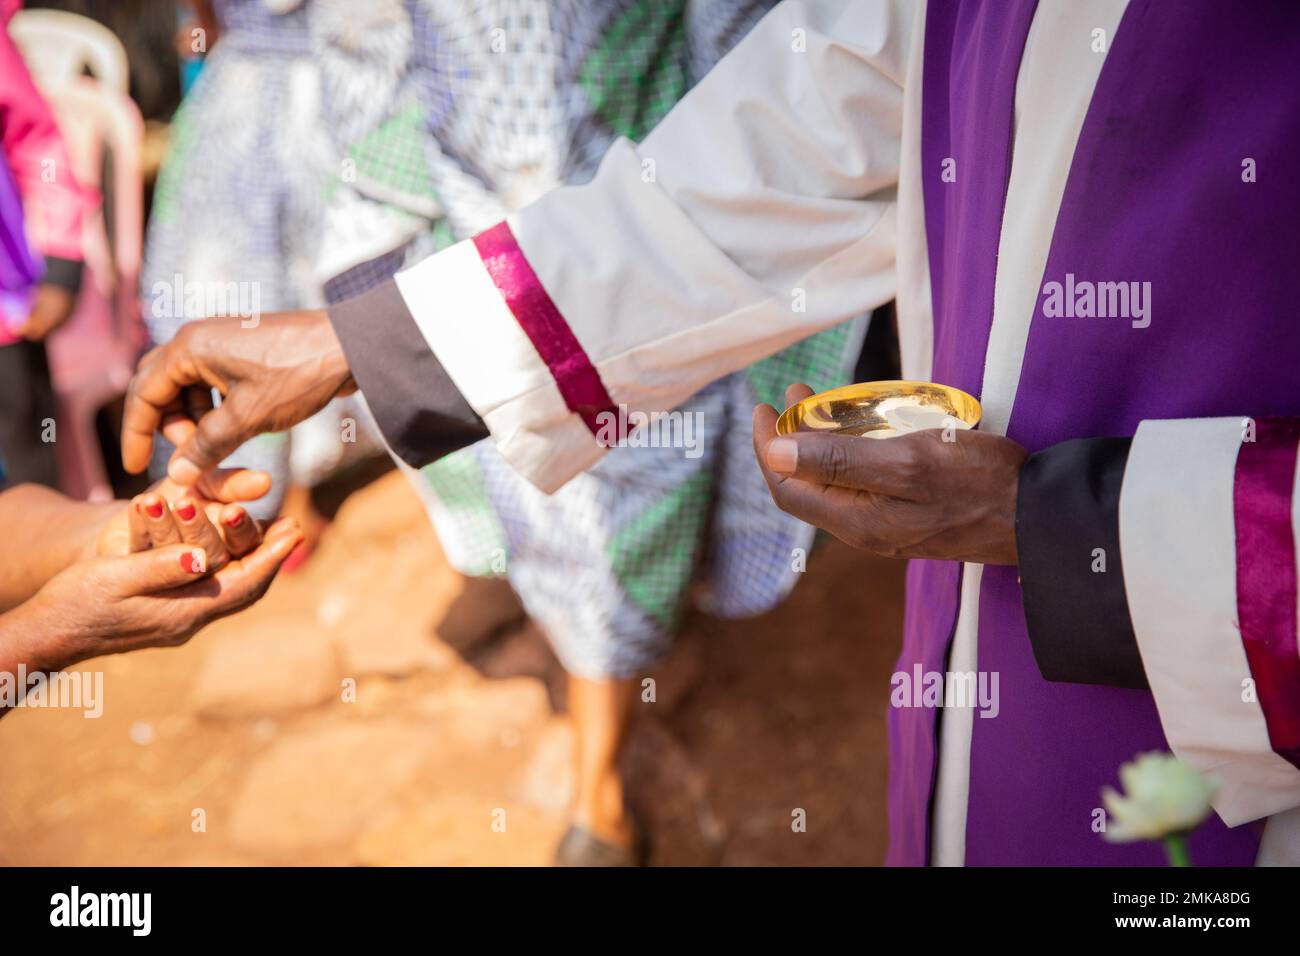 Ein afrikanischer Priester gibt einem Gläubigen sakramentales Brot, konzentriert sich auf die Hand mit sakramentalem Brot Stockfoto